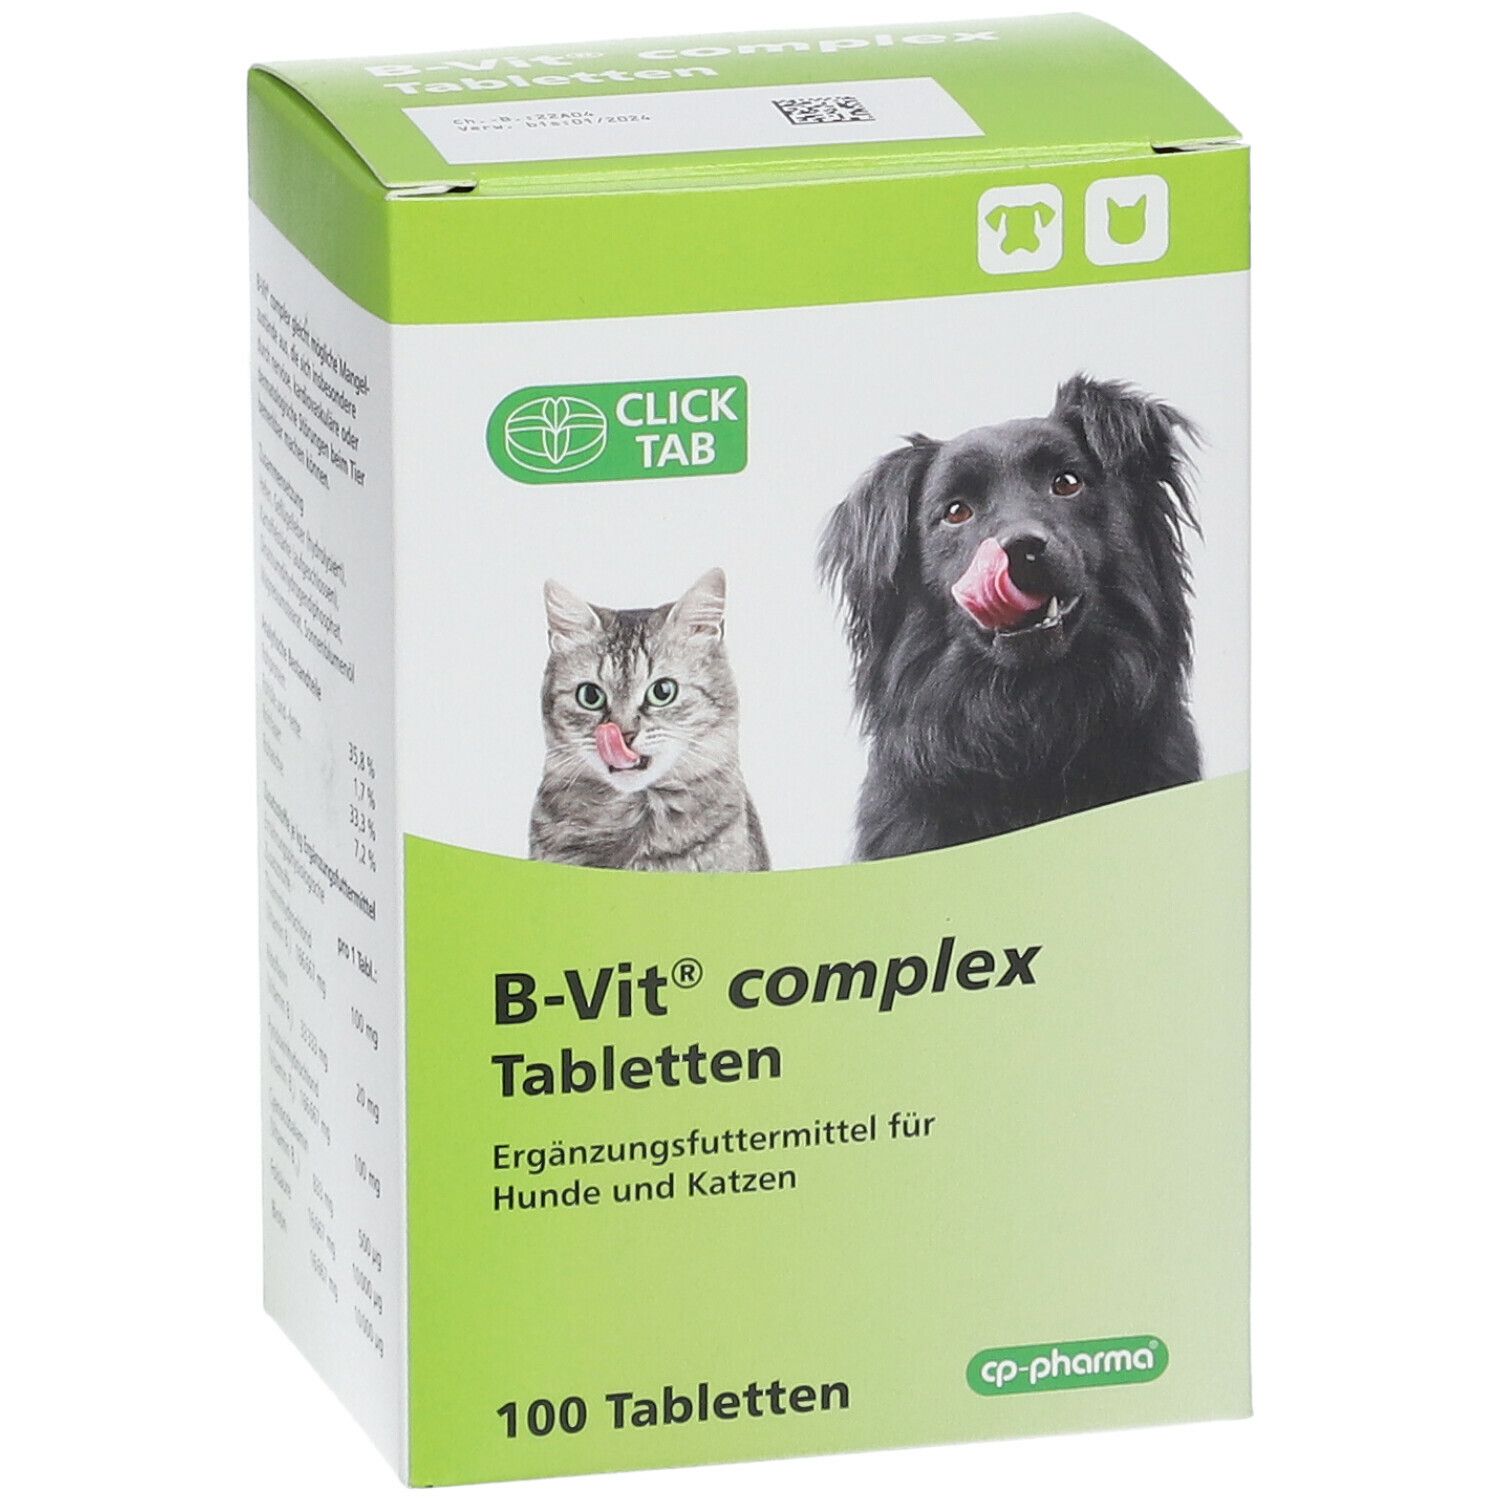 B-Vit® complex